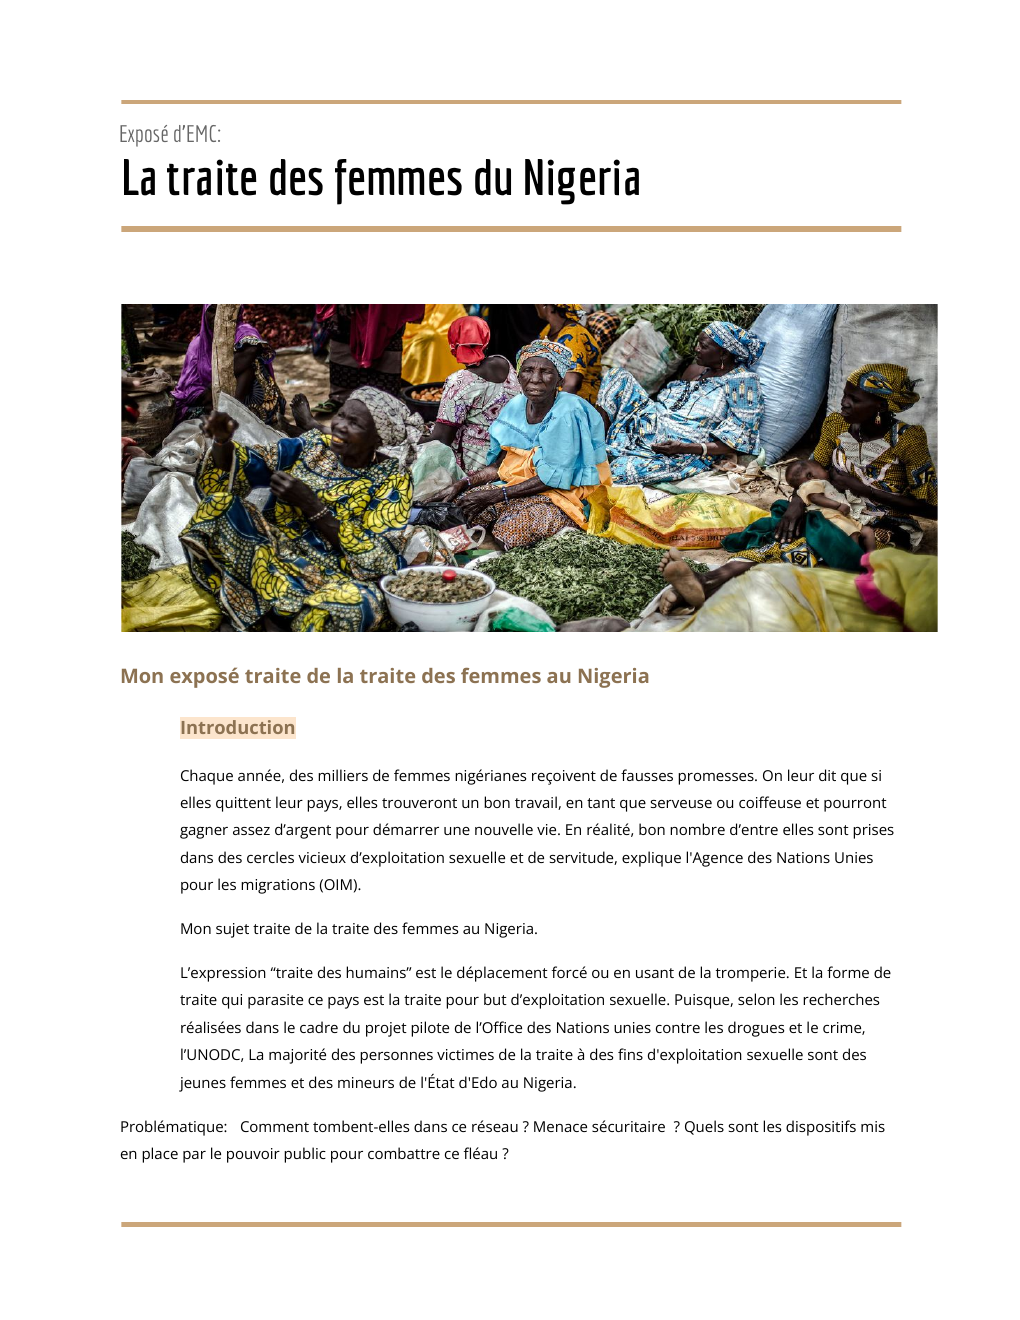 Prévisualisation du document exposé traite des femmes nigeria